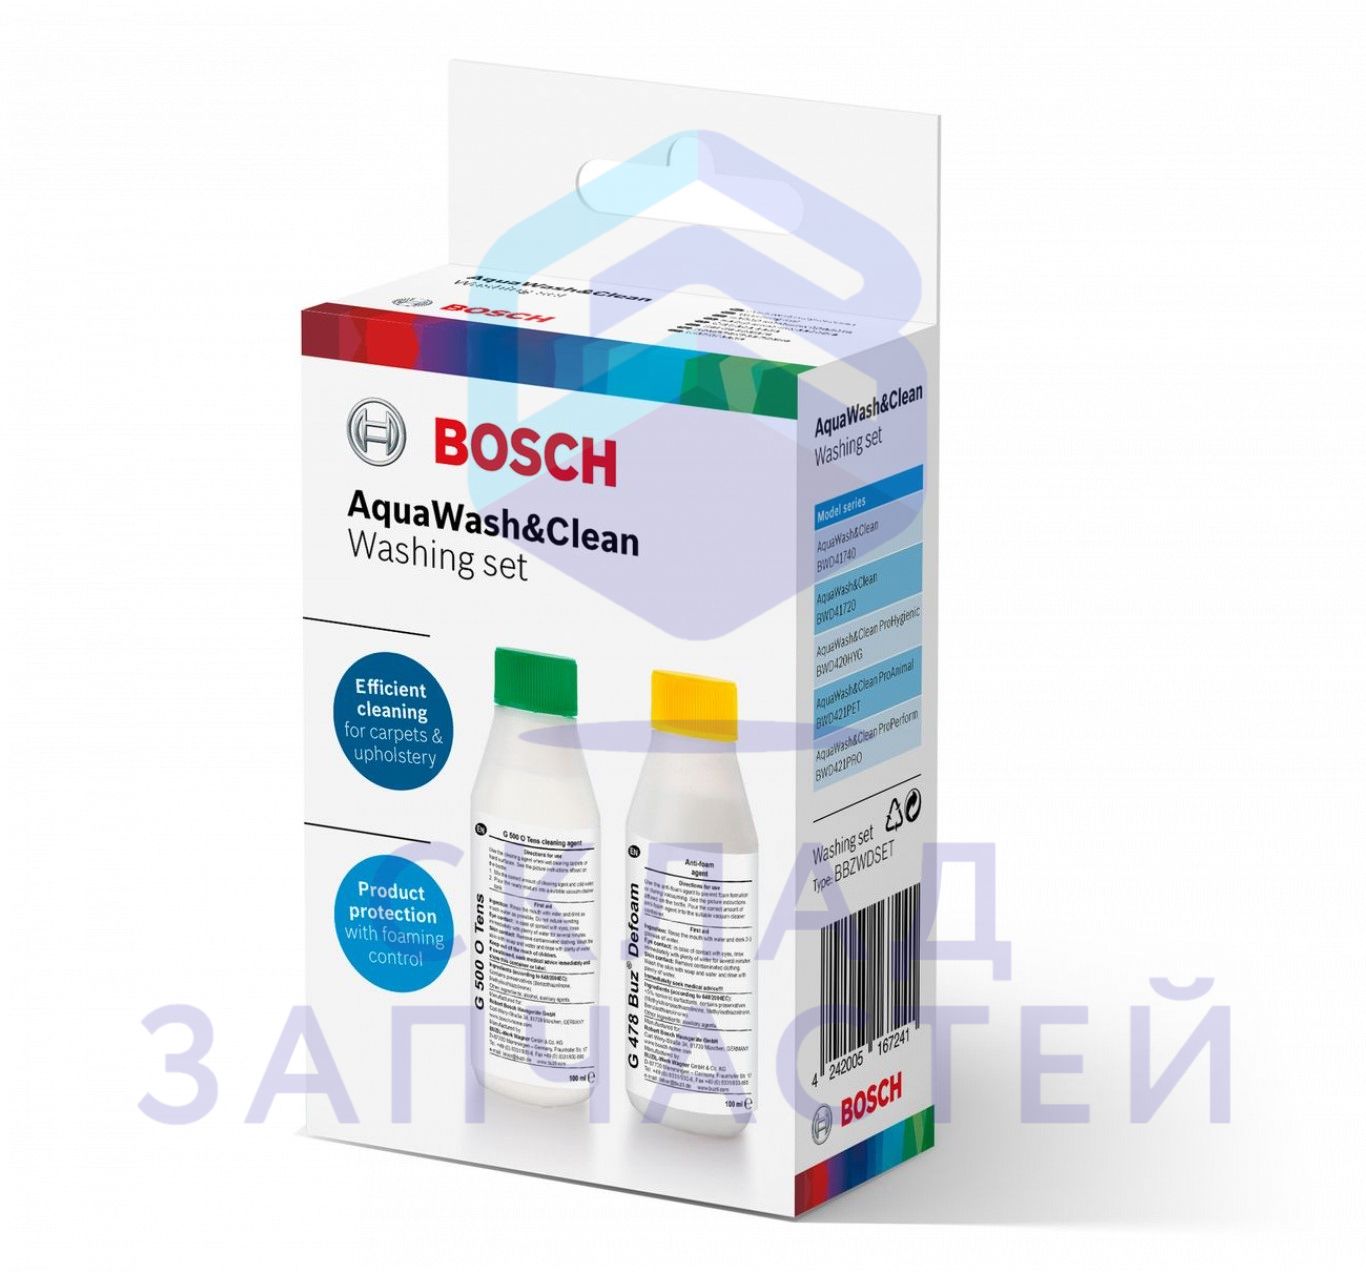 00312086 Bosch оригинал, набор средств aquawash&clean для моющих пылесосов bosch: шампунь+пеногаситель